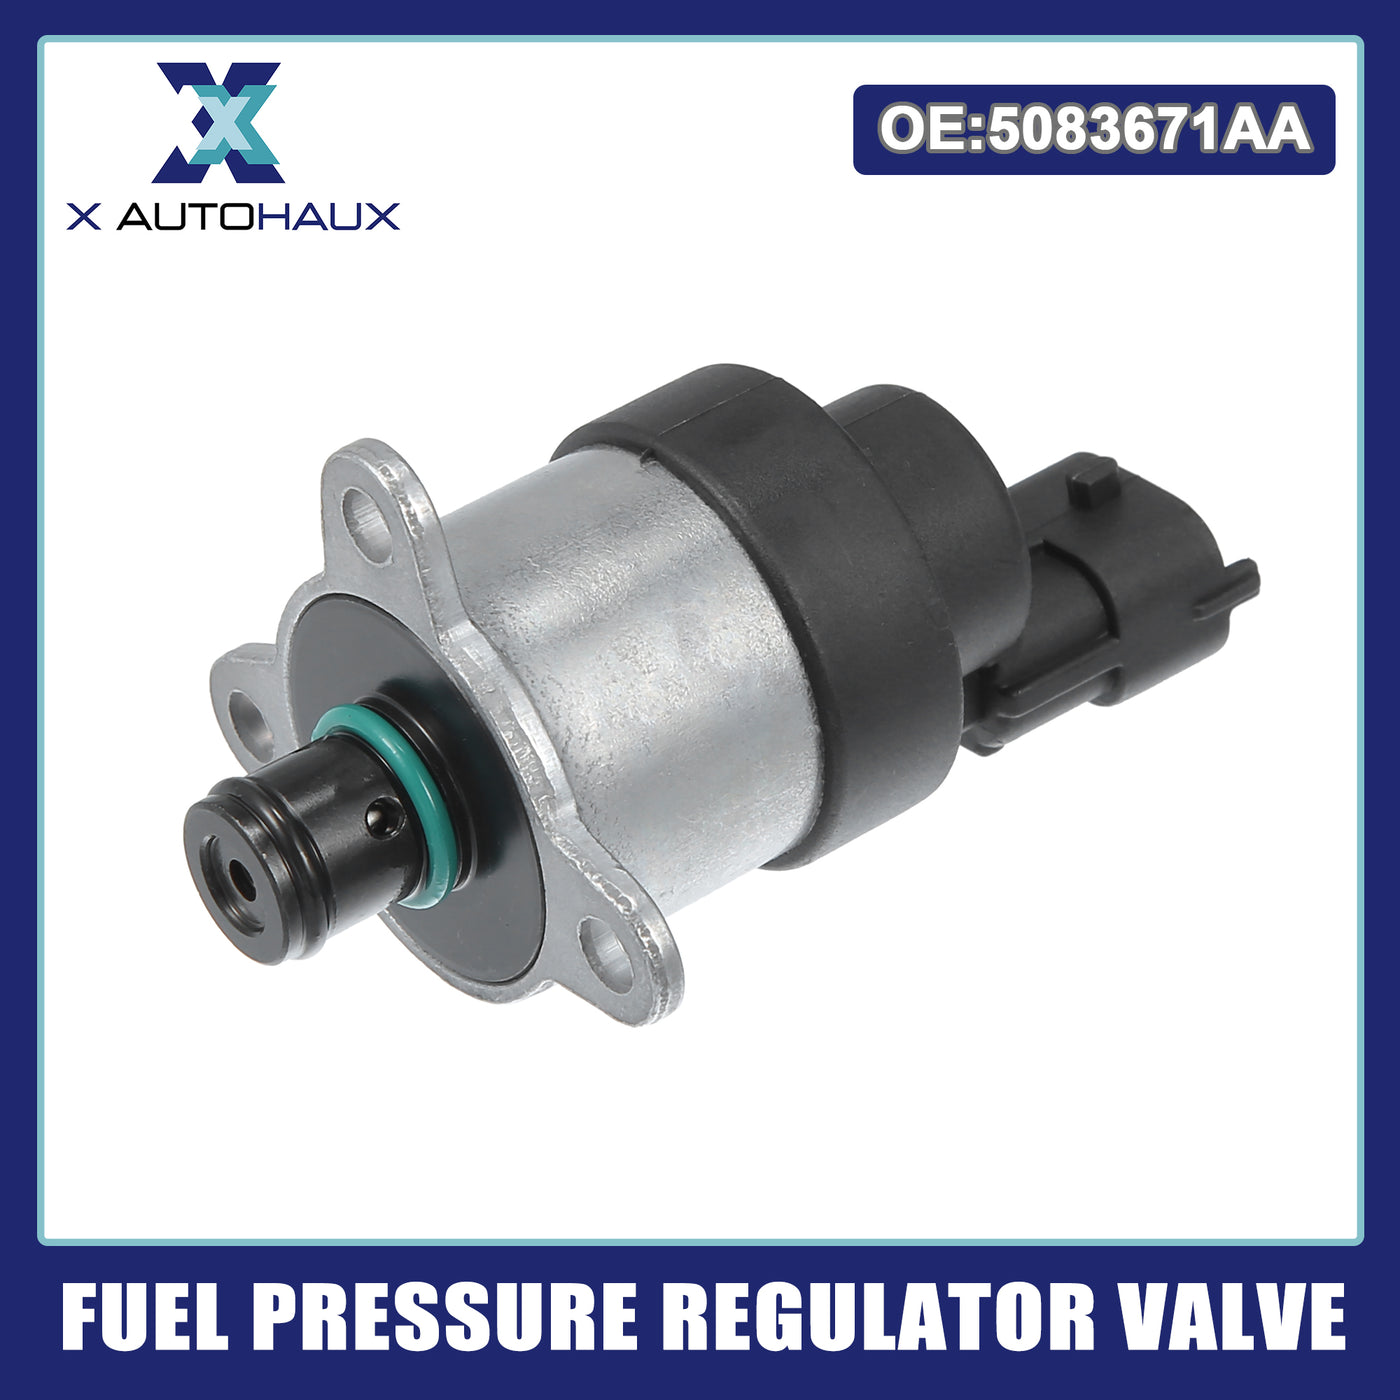 ACROPIX Fuel Pressure Regulator Valve Black Silver Tone Fit for CHRYSLER VOYAGER 2001-2007 - Pack of 1